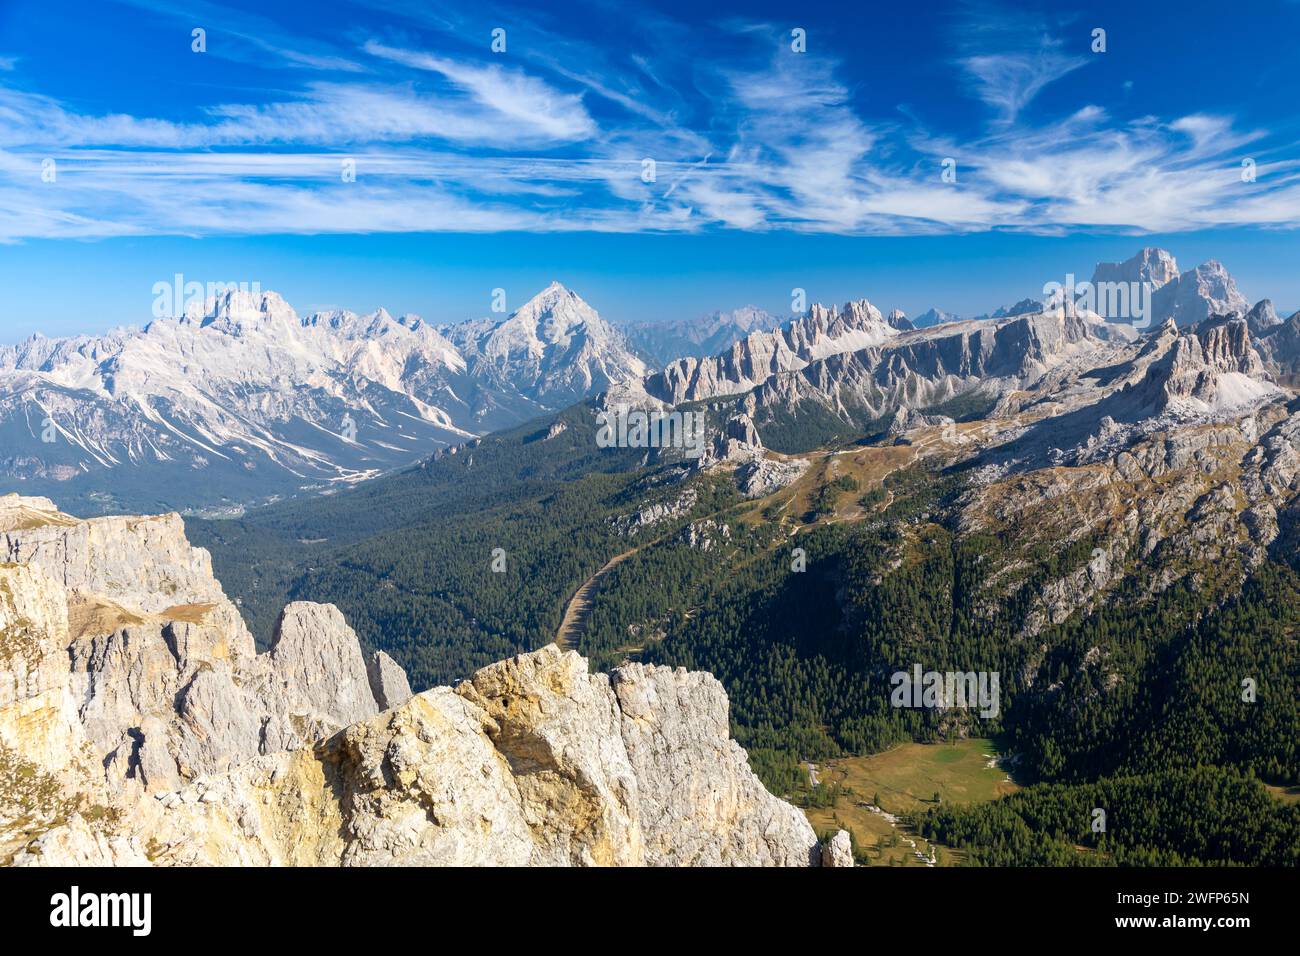 Blick vom Gipfel des Berges Lagazuoi auf Tofane, Antelao, Cinque Torri, Croda da Lago und Pelmo, dolomiten, Italien Stockfoto